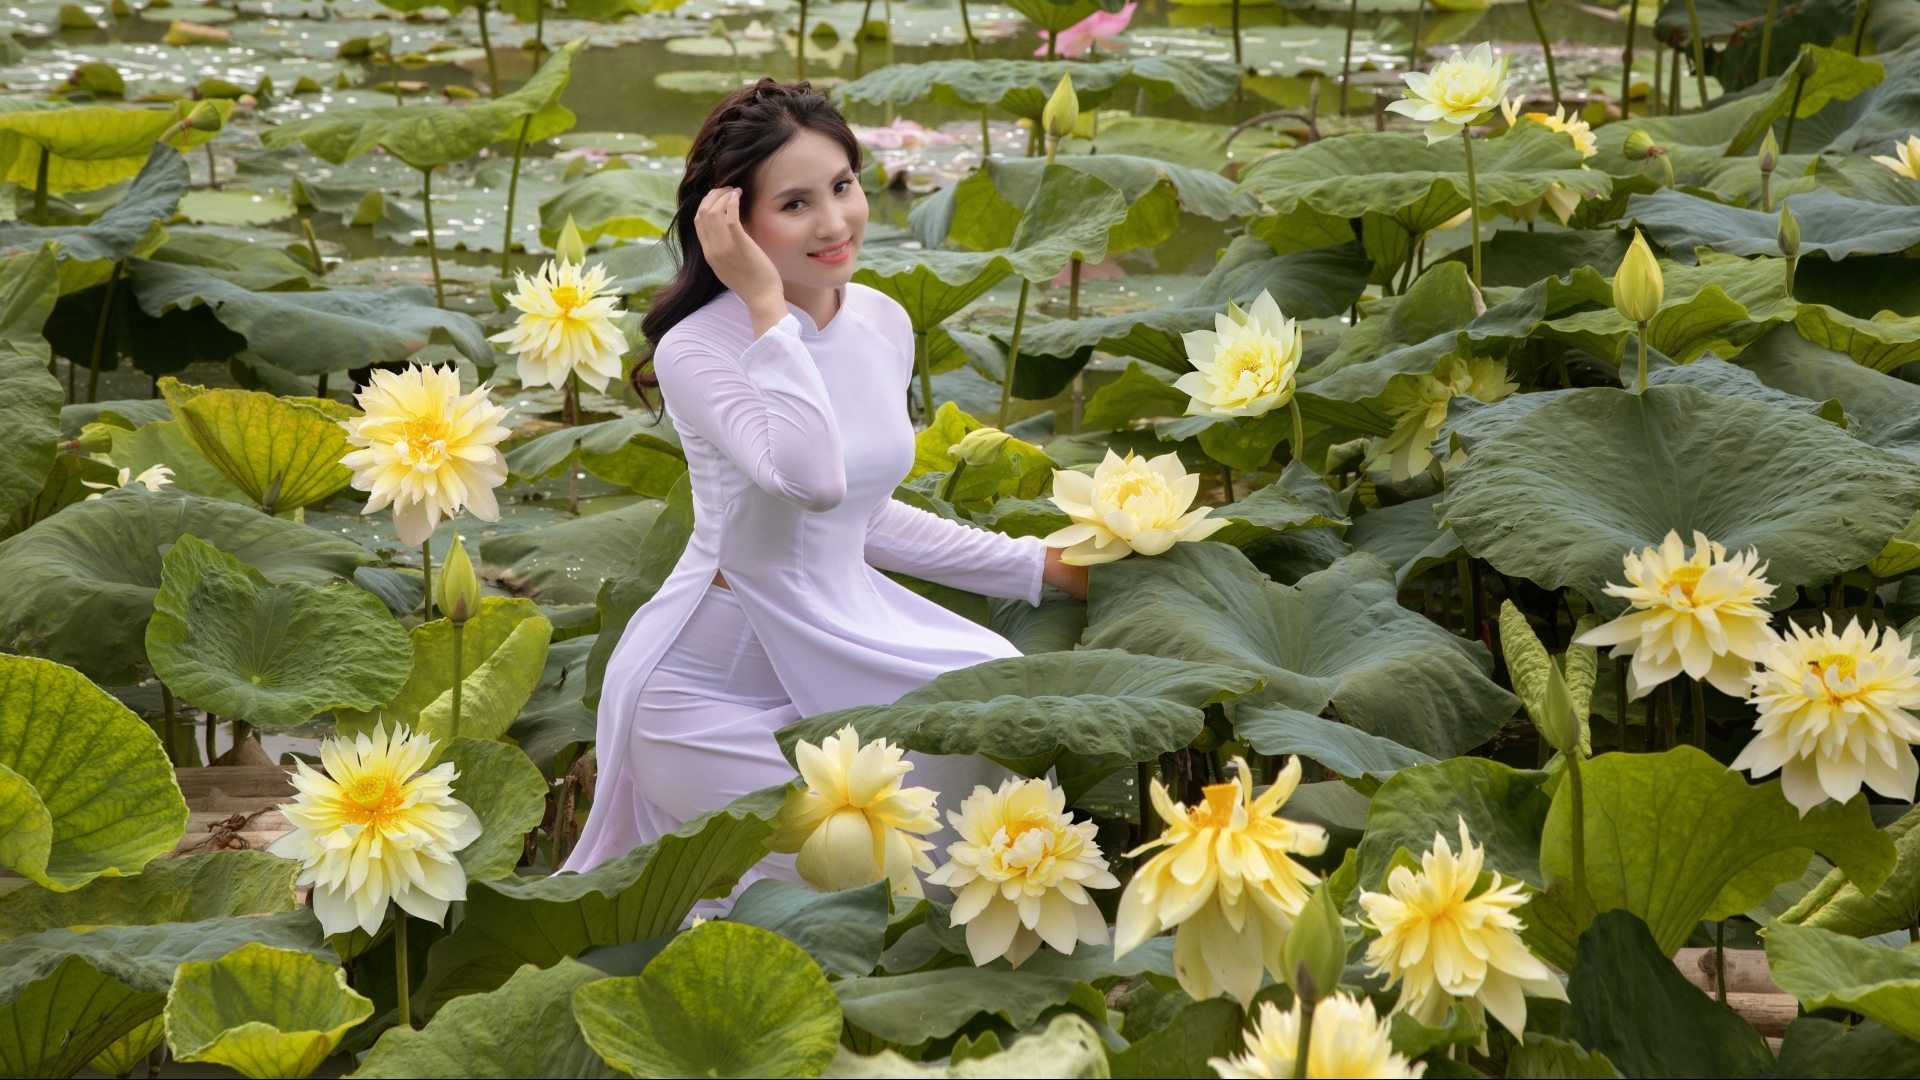 河内市的莲花池颇吸引很多人来拍照